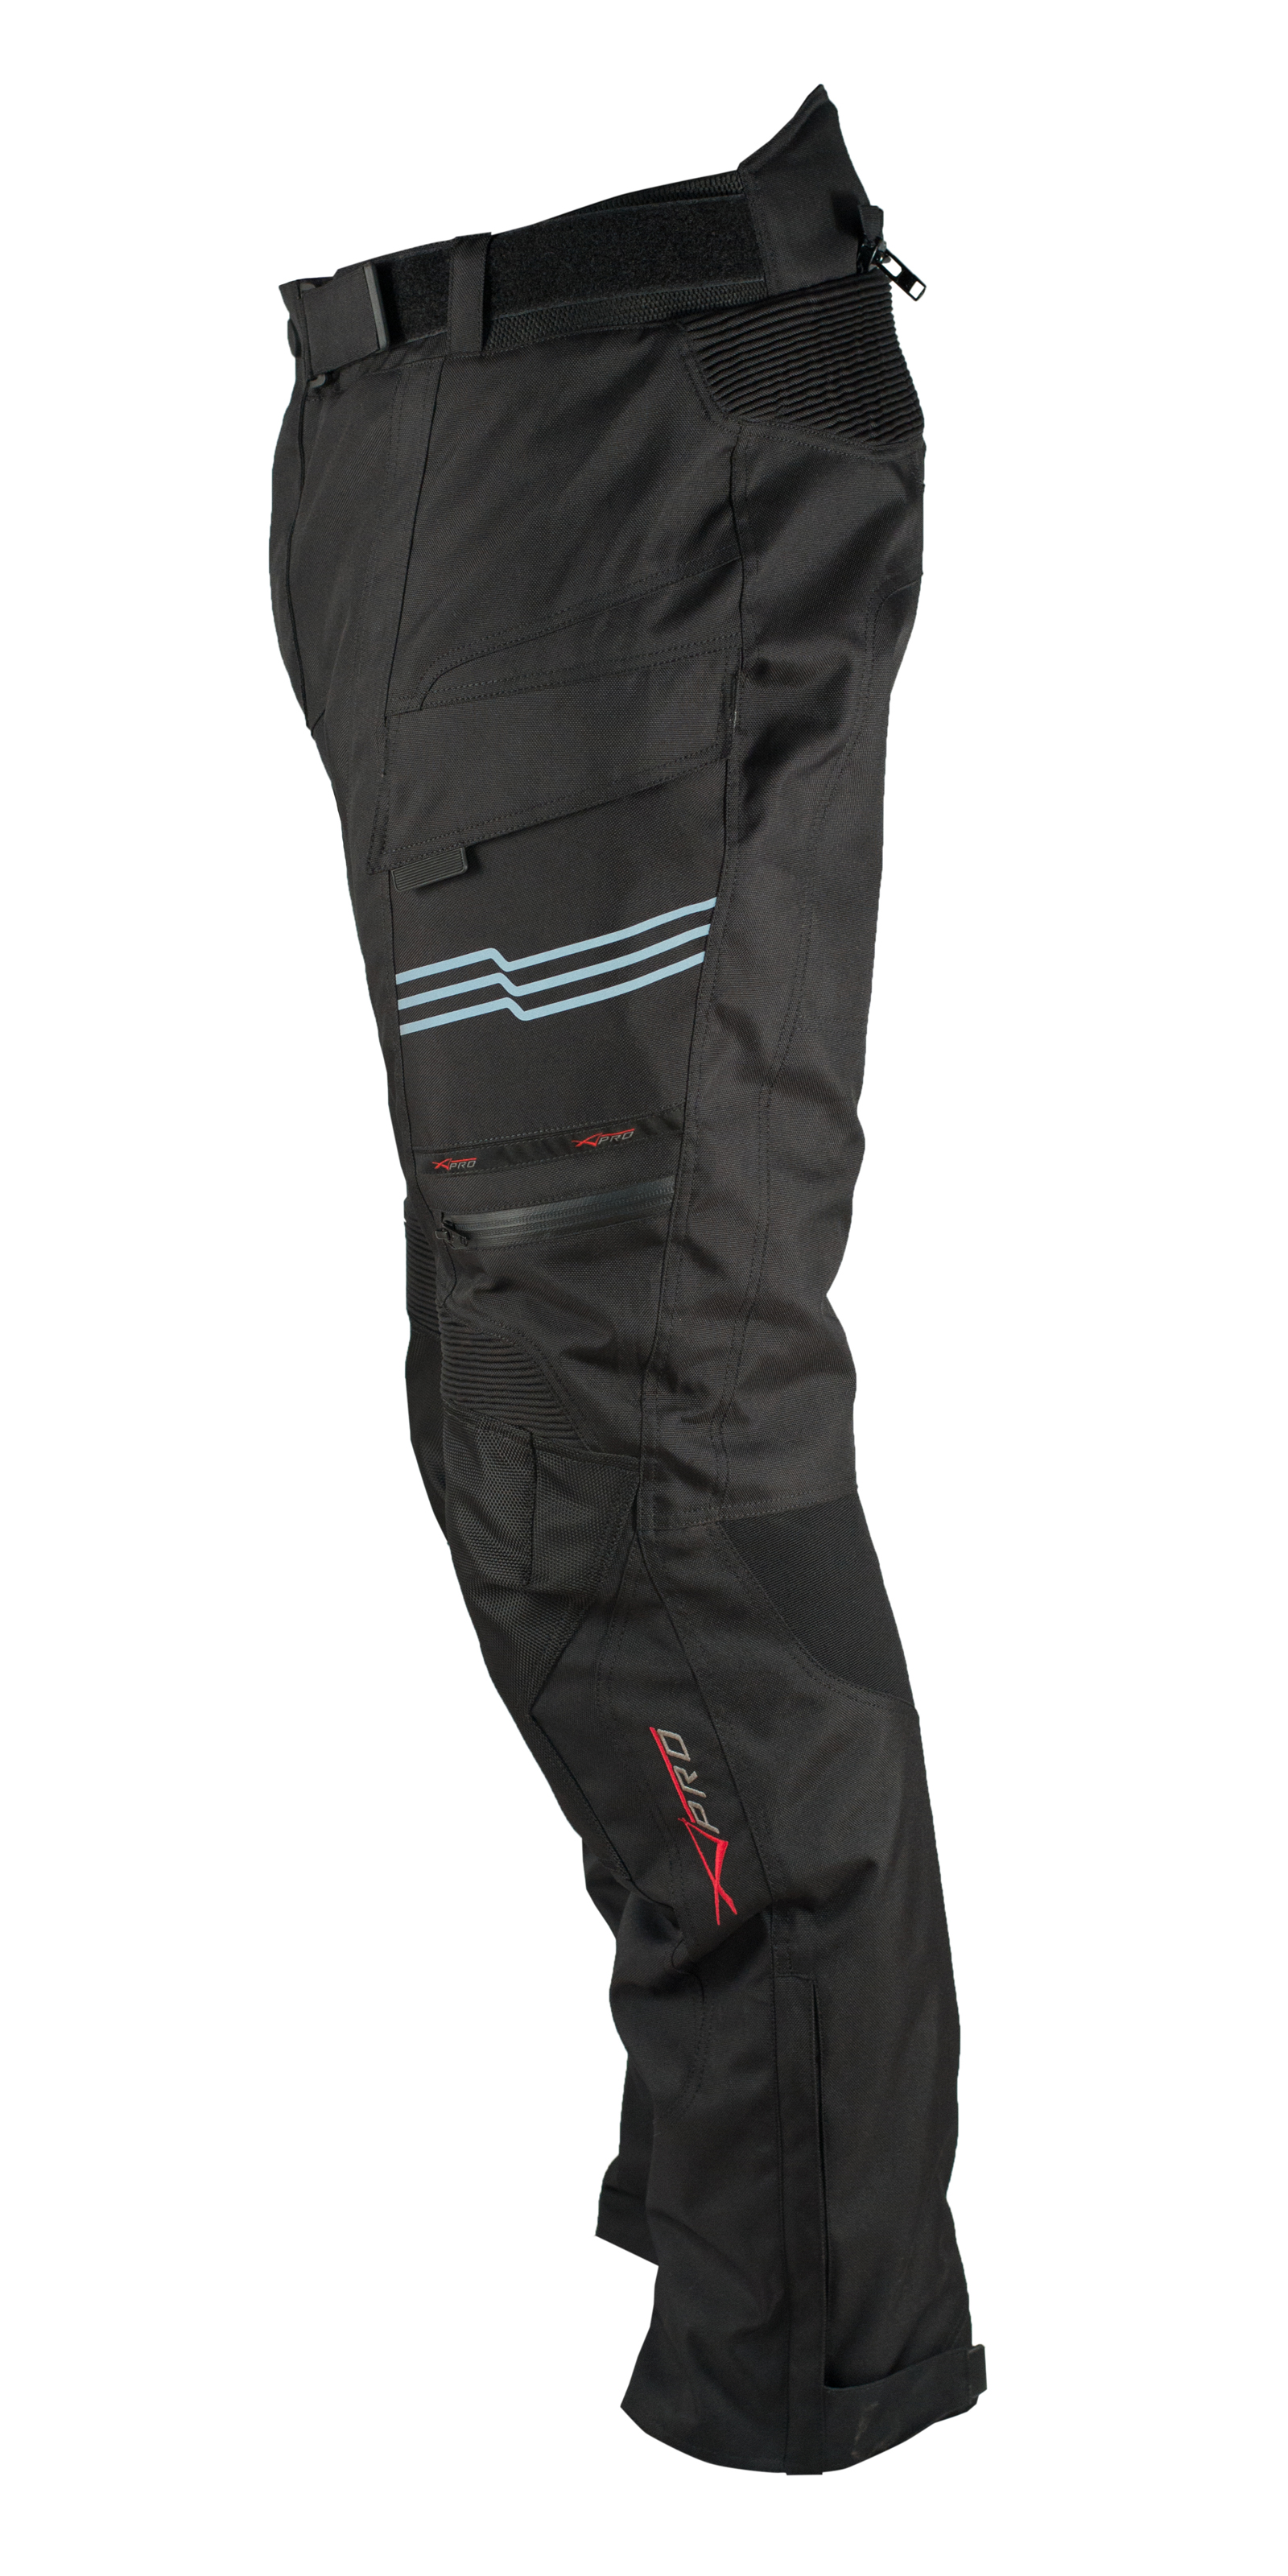 Motorcycle trousers - Motorbike trousers, Waterproof Motorcycle Trousers, Thermal